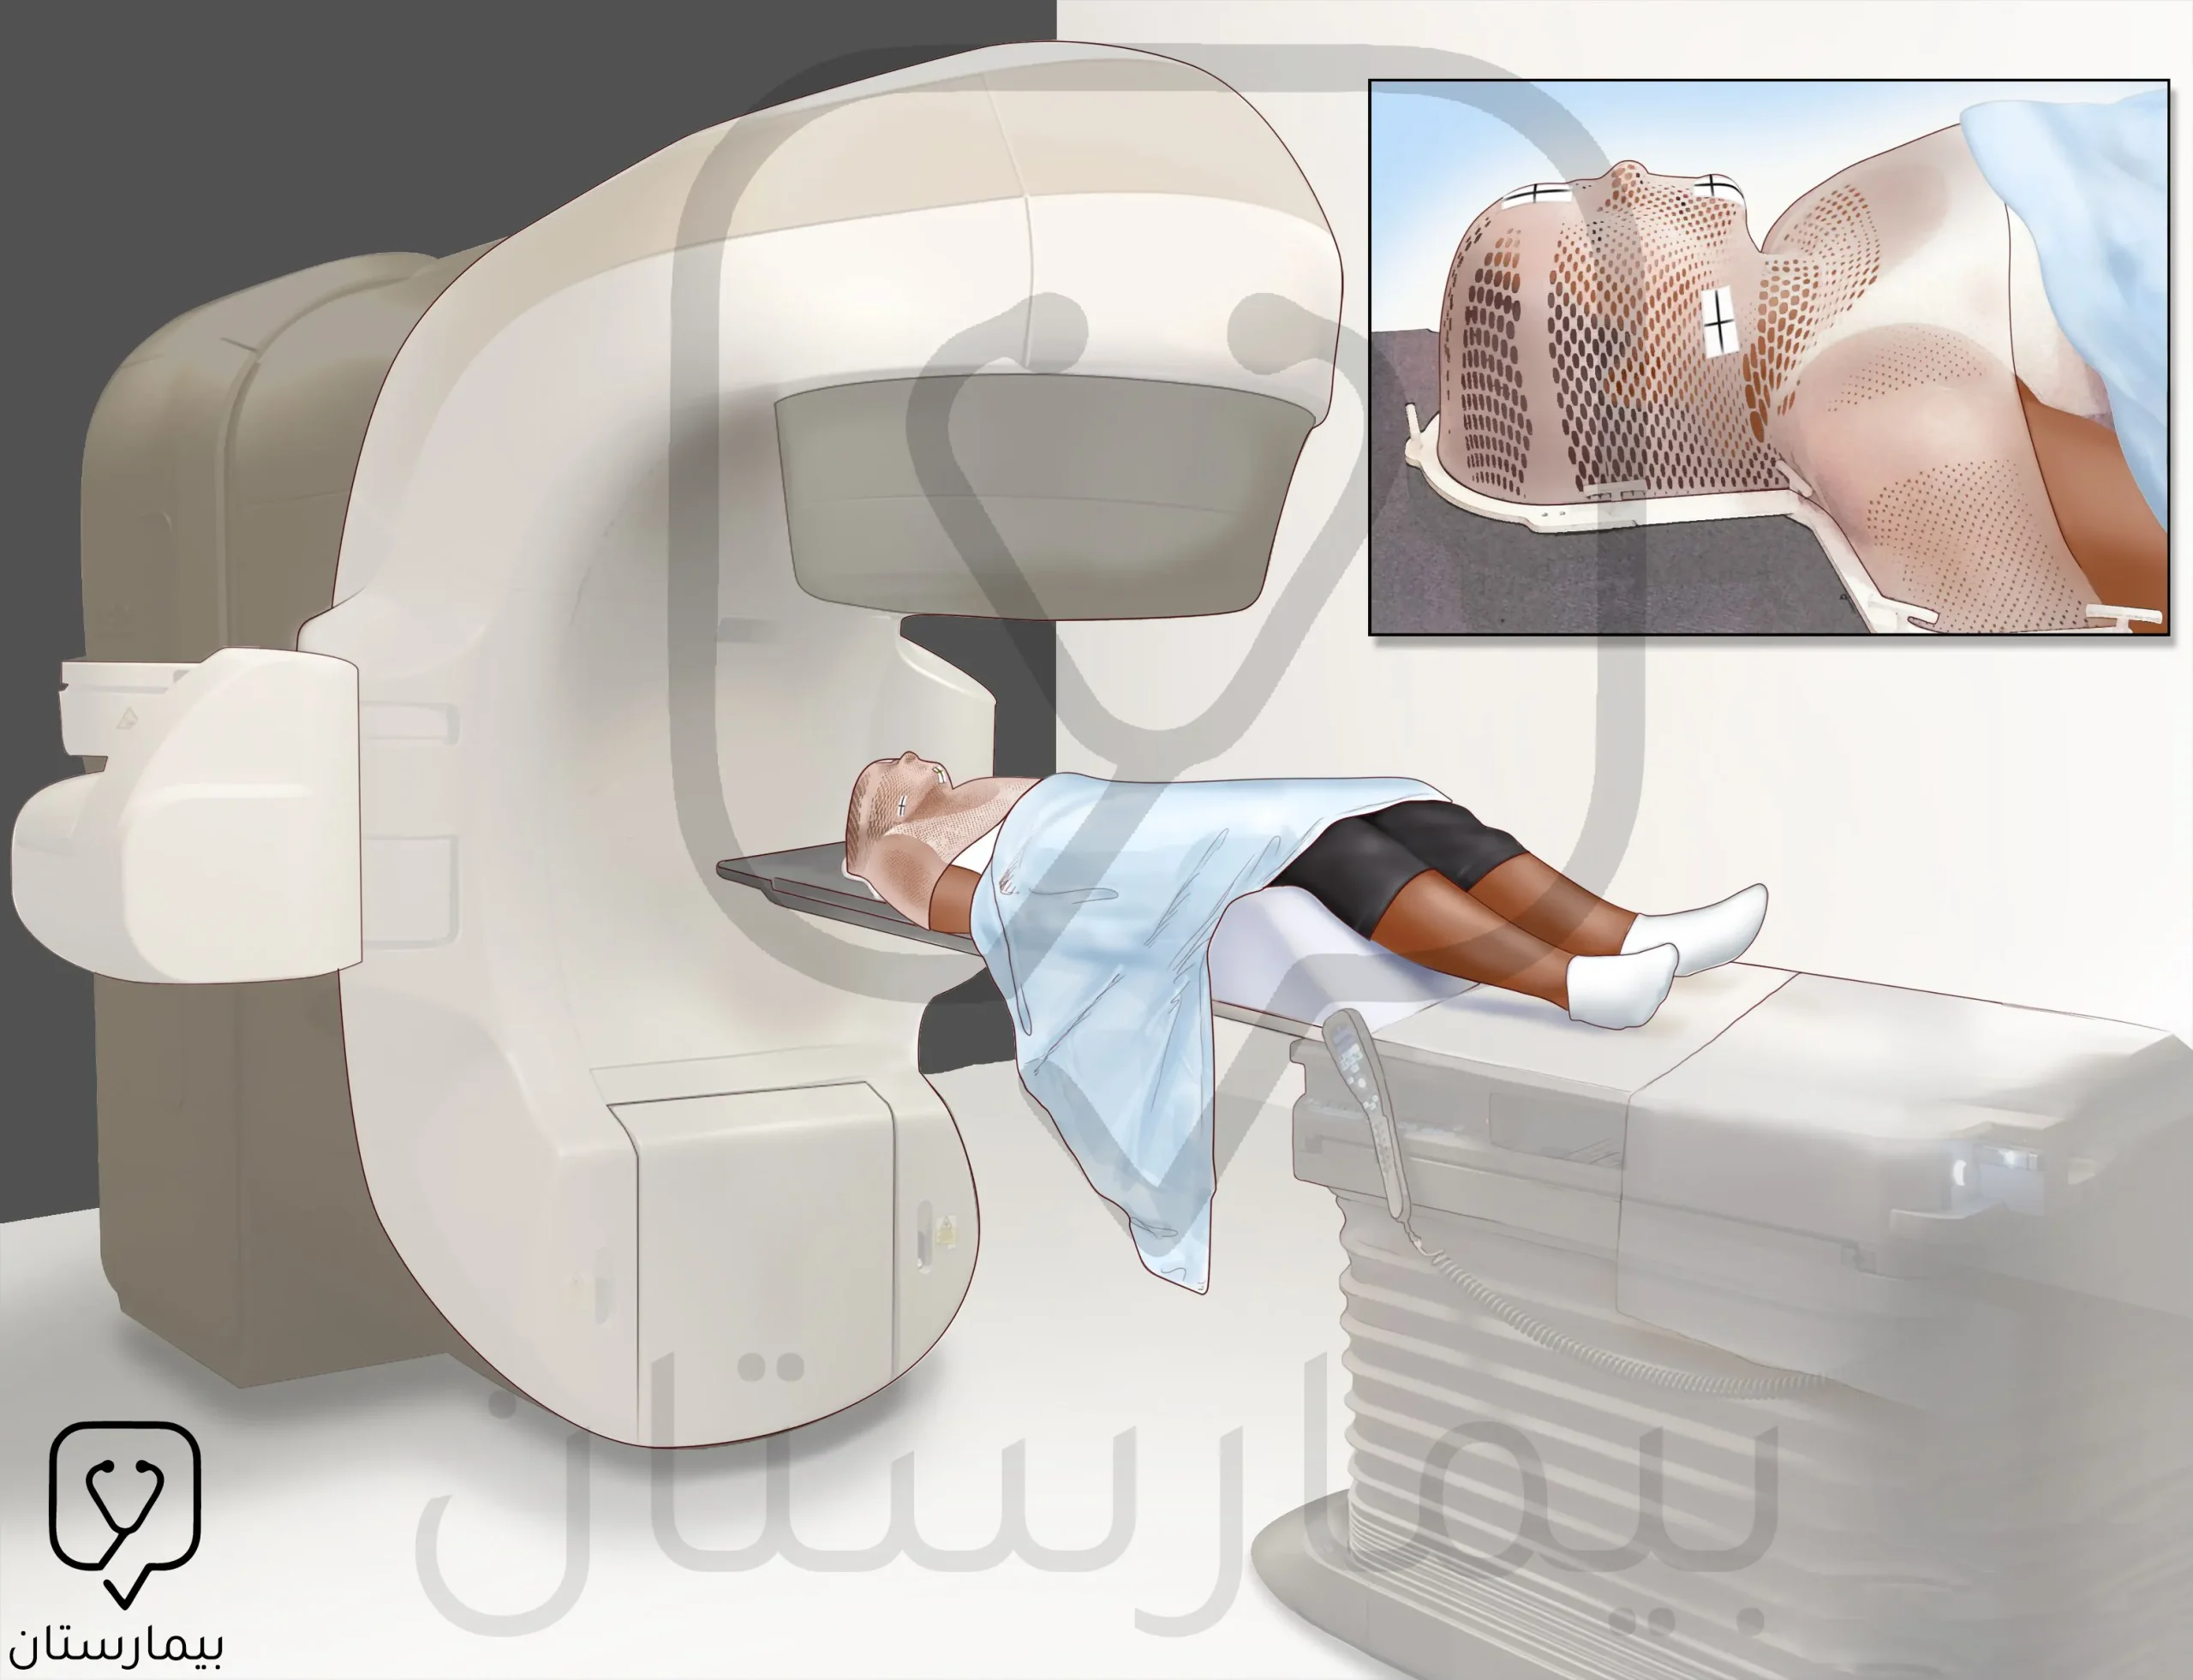 يستلقي المريض ويقوم جهاز كبير بالدوران حوله وتوجيه حزمة الأشعة نحو الورم